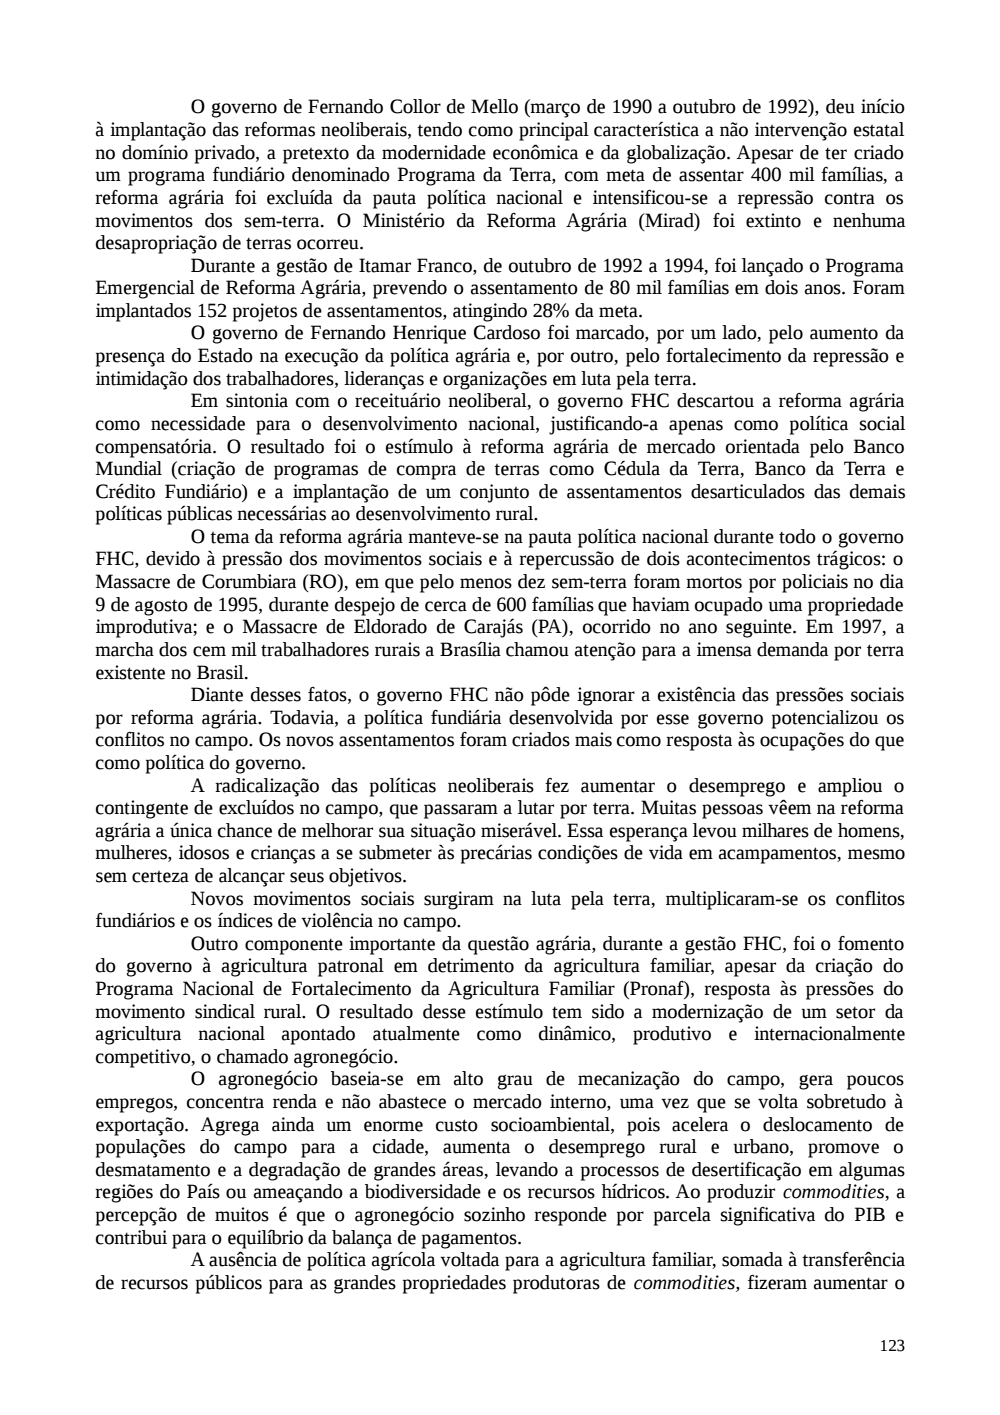 Page 123 from Relatório final da comissão